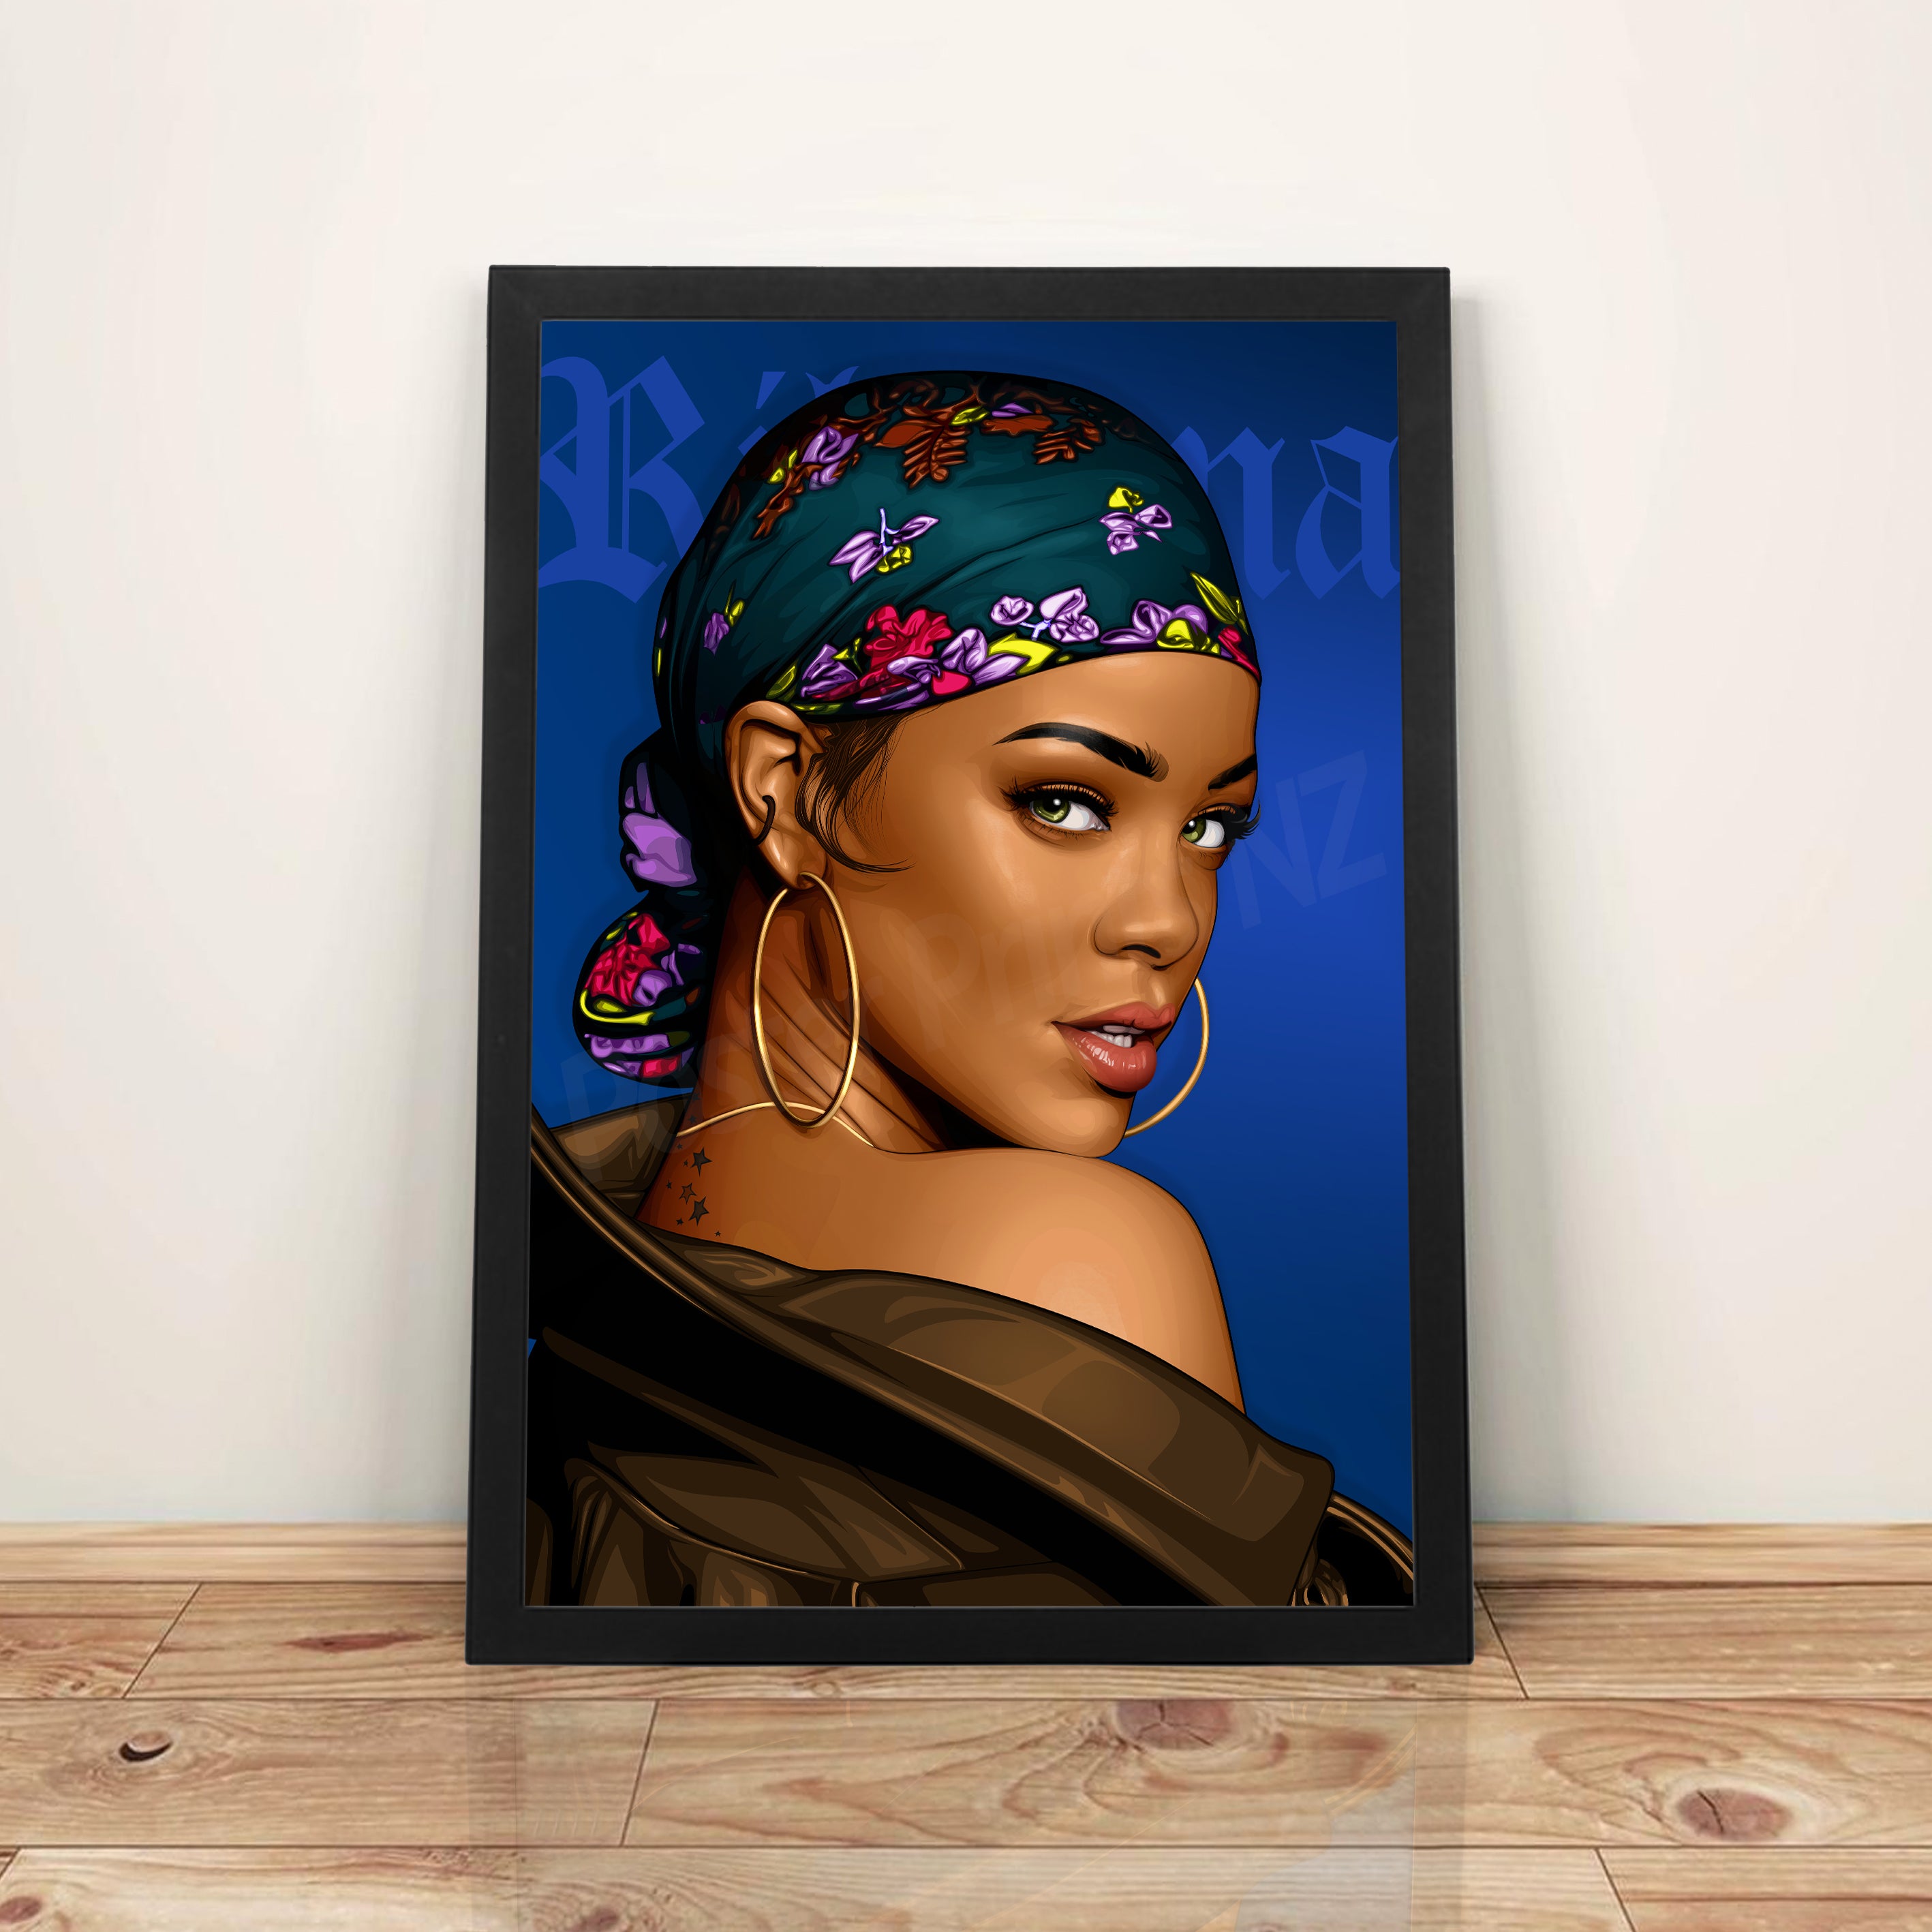 Rihanna - A3 Framed Digital Art Poster - Poster Prints NZ